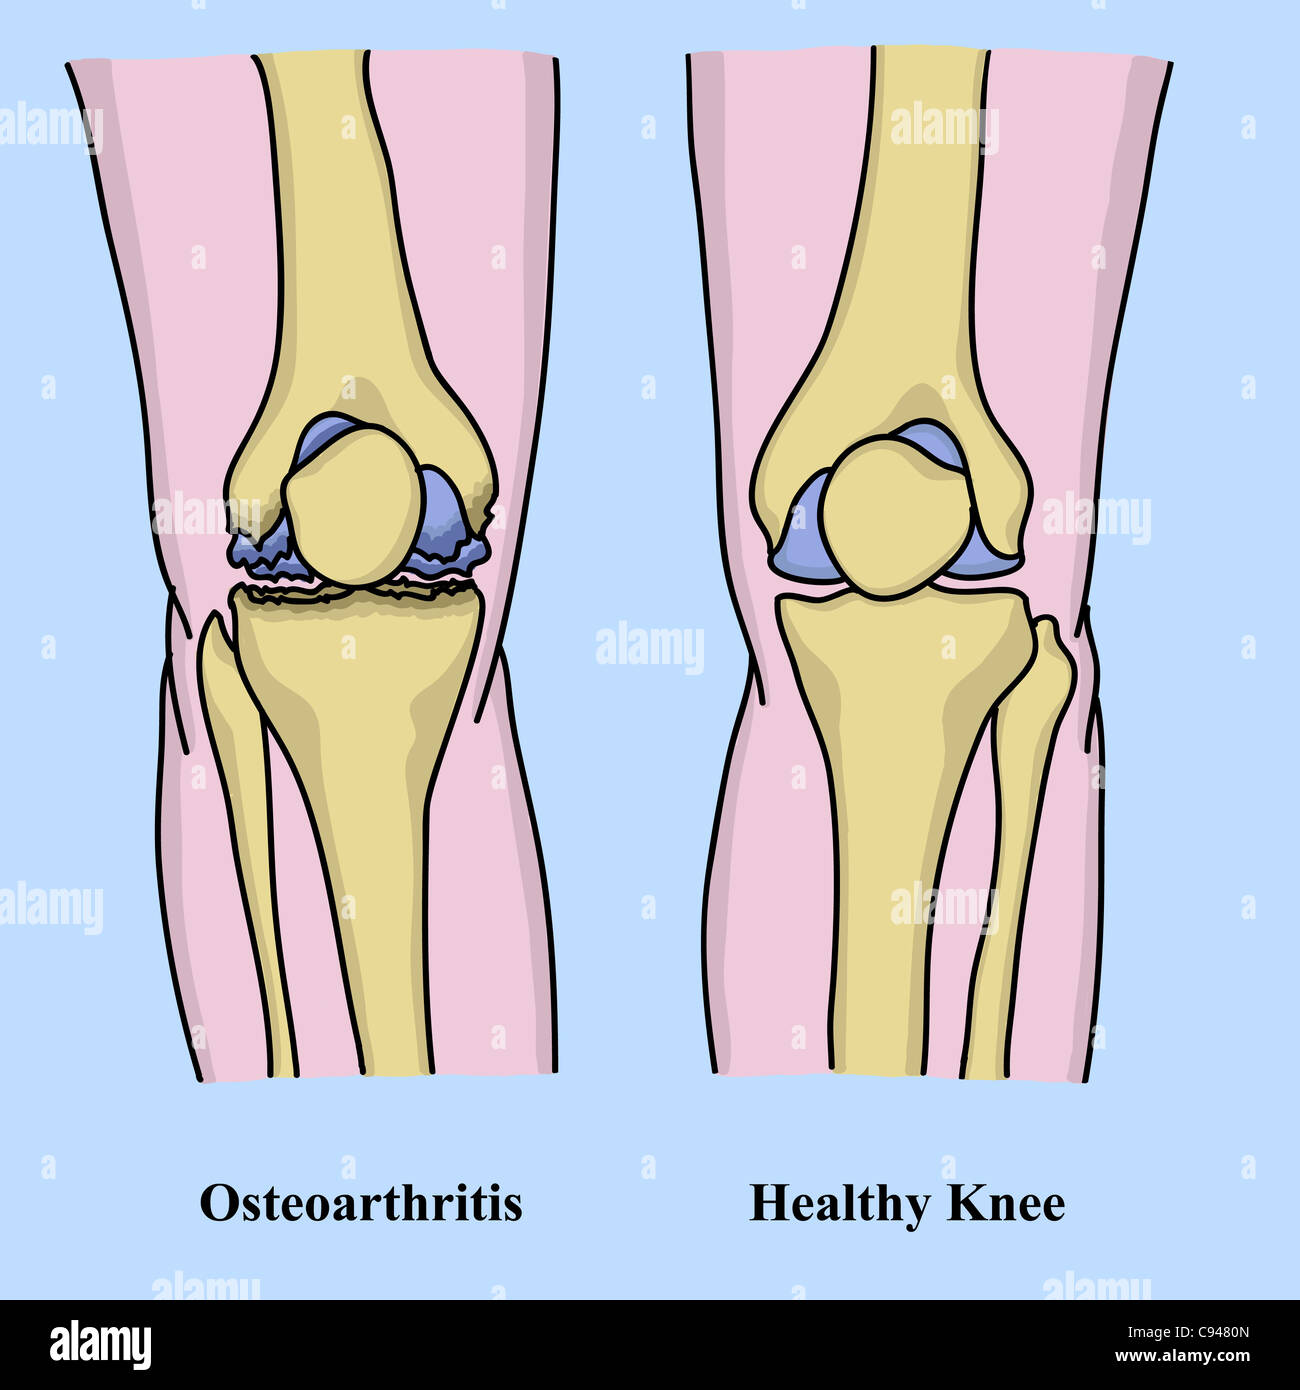 Osteoarthritis illustration Stock Photo